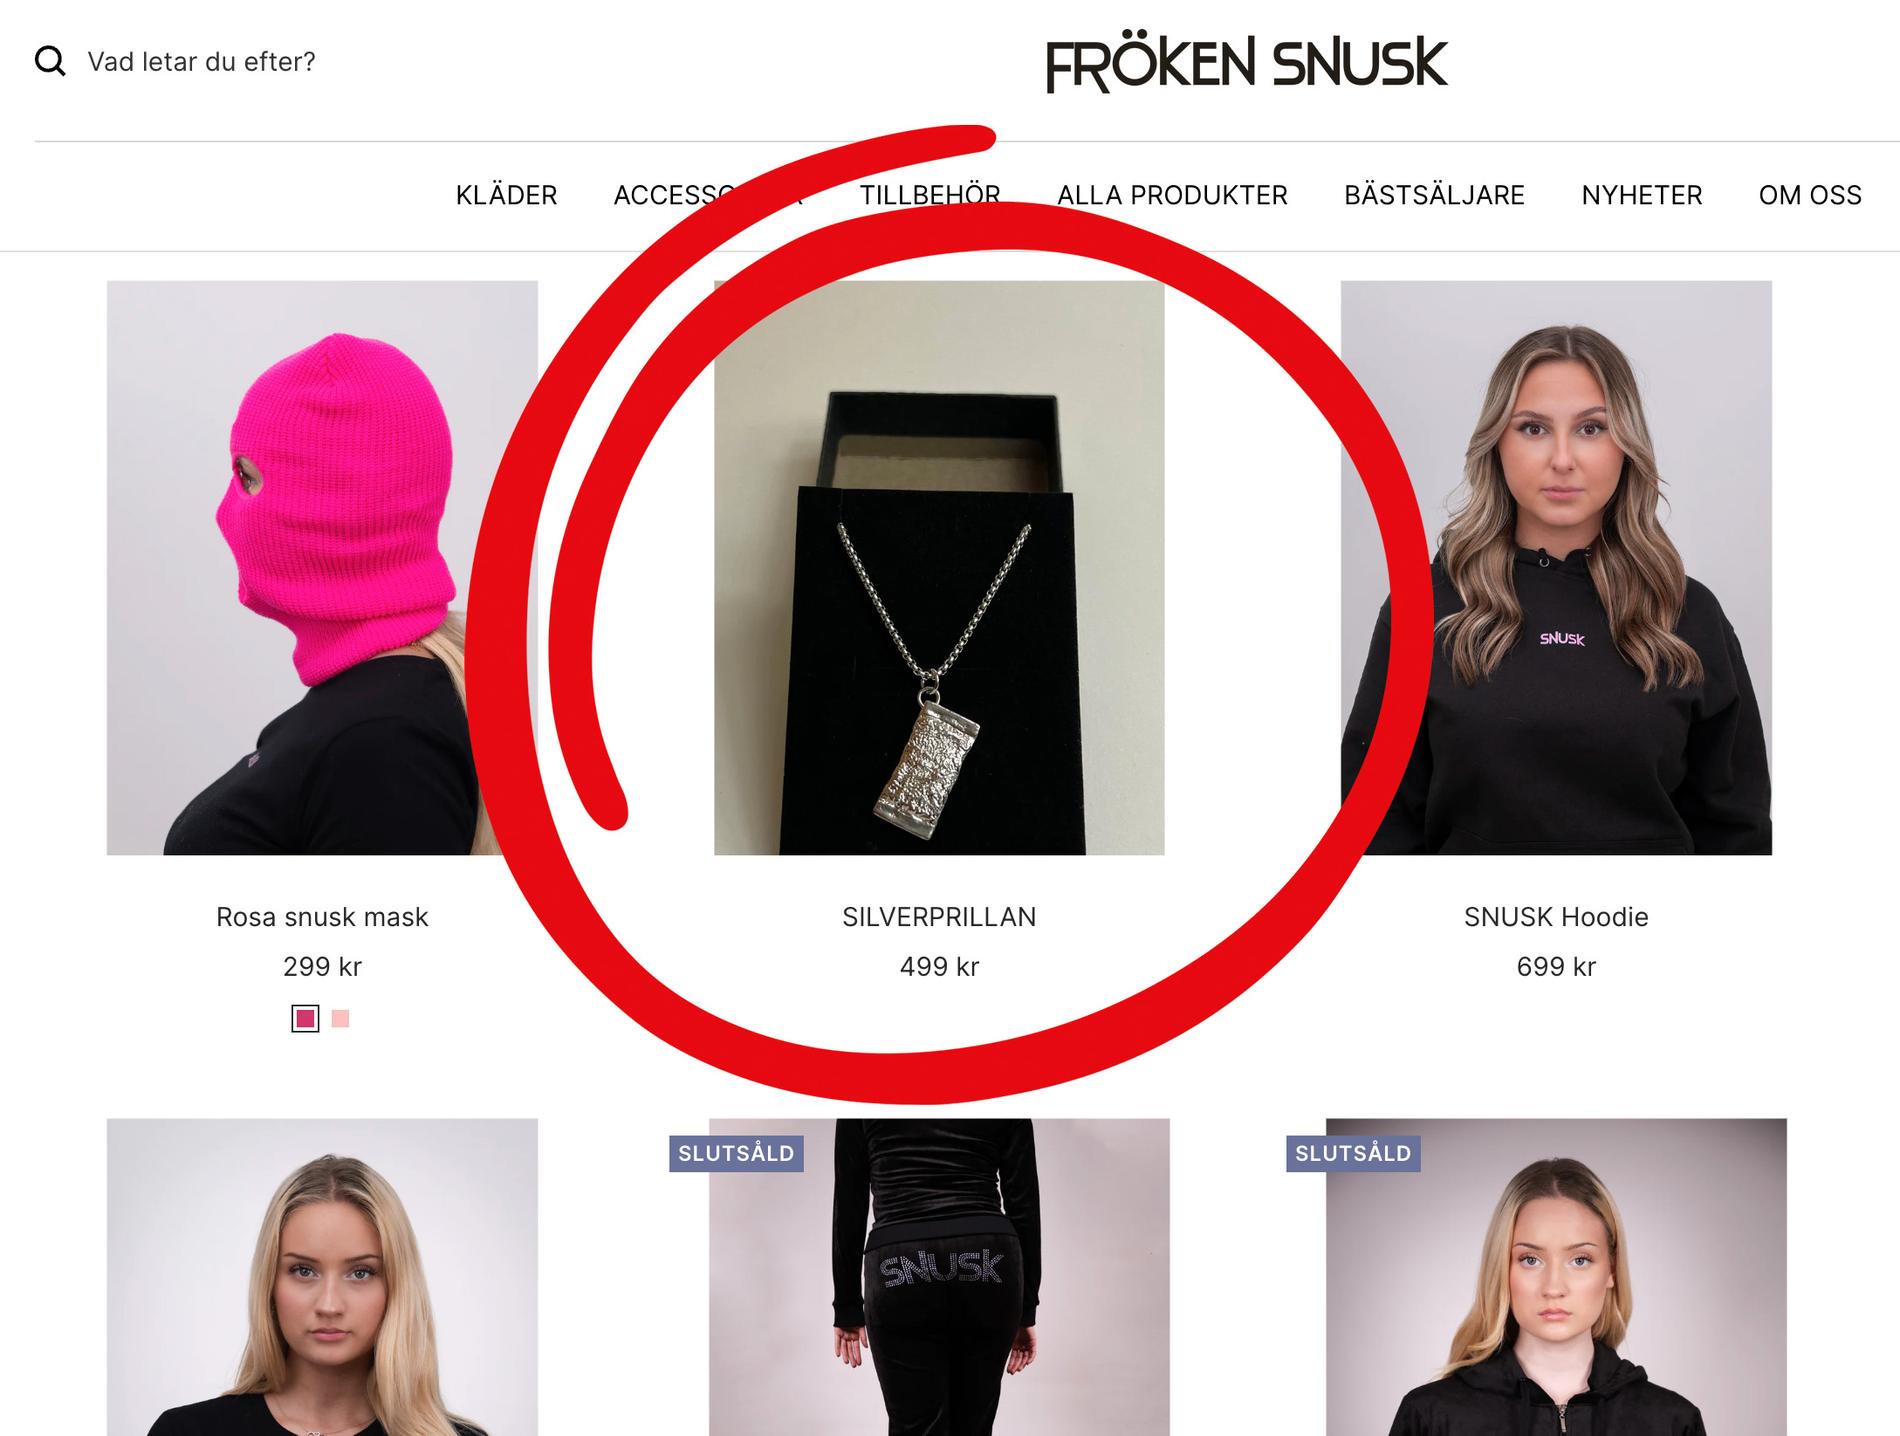 Här säljs ”Silverprillan” på Frökens Snusks officiella webbshop, under samma namn och till samma pris som Louise Erianders smycke. 